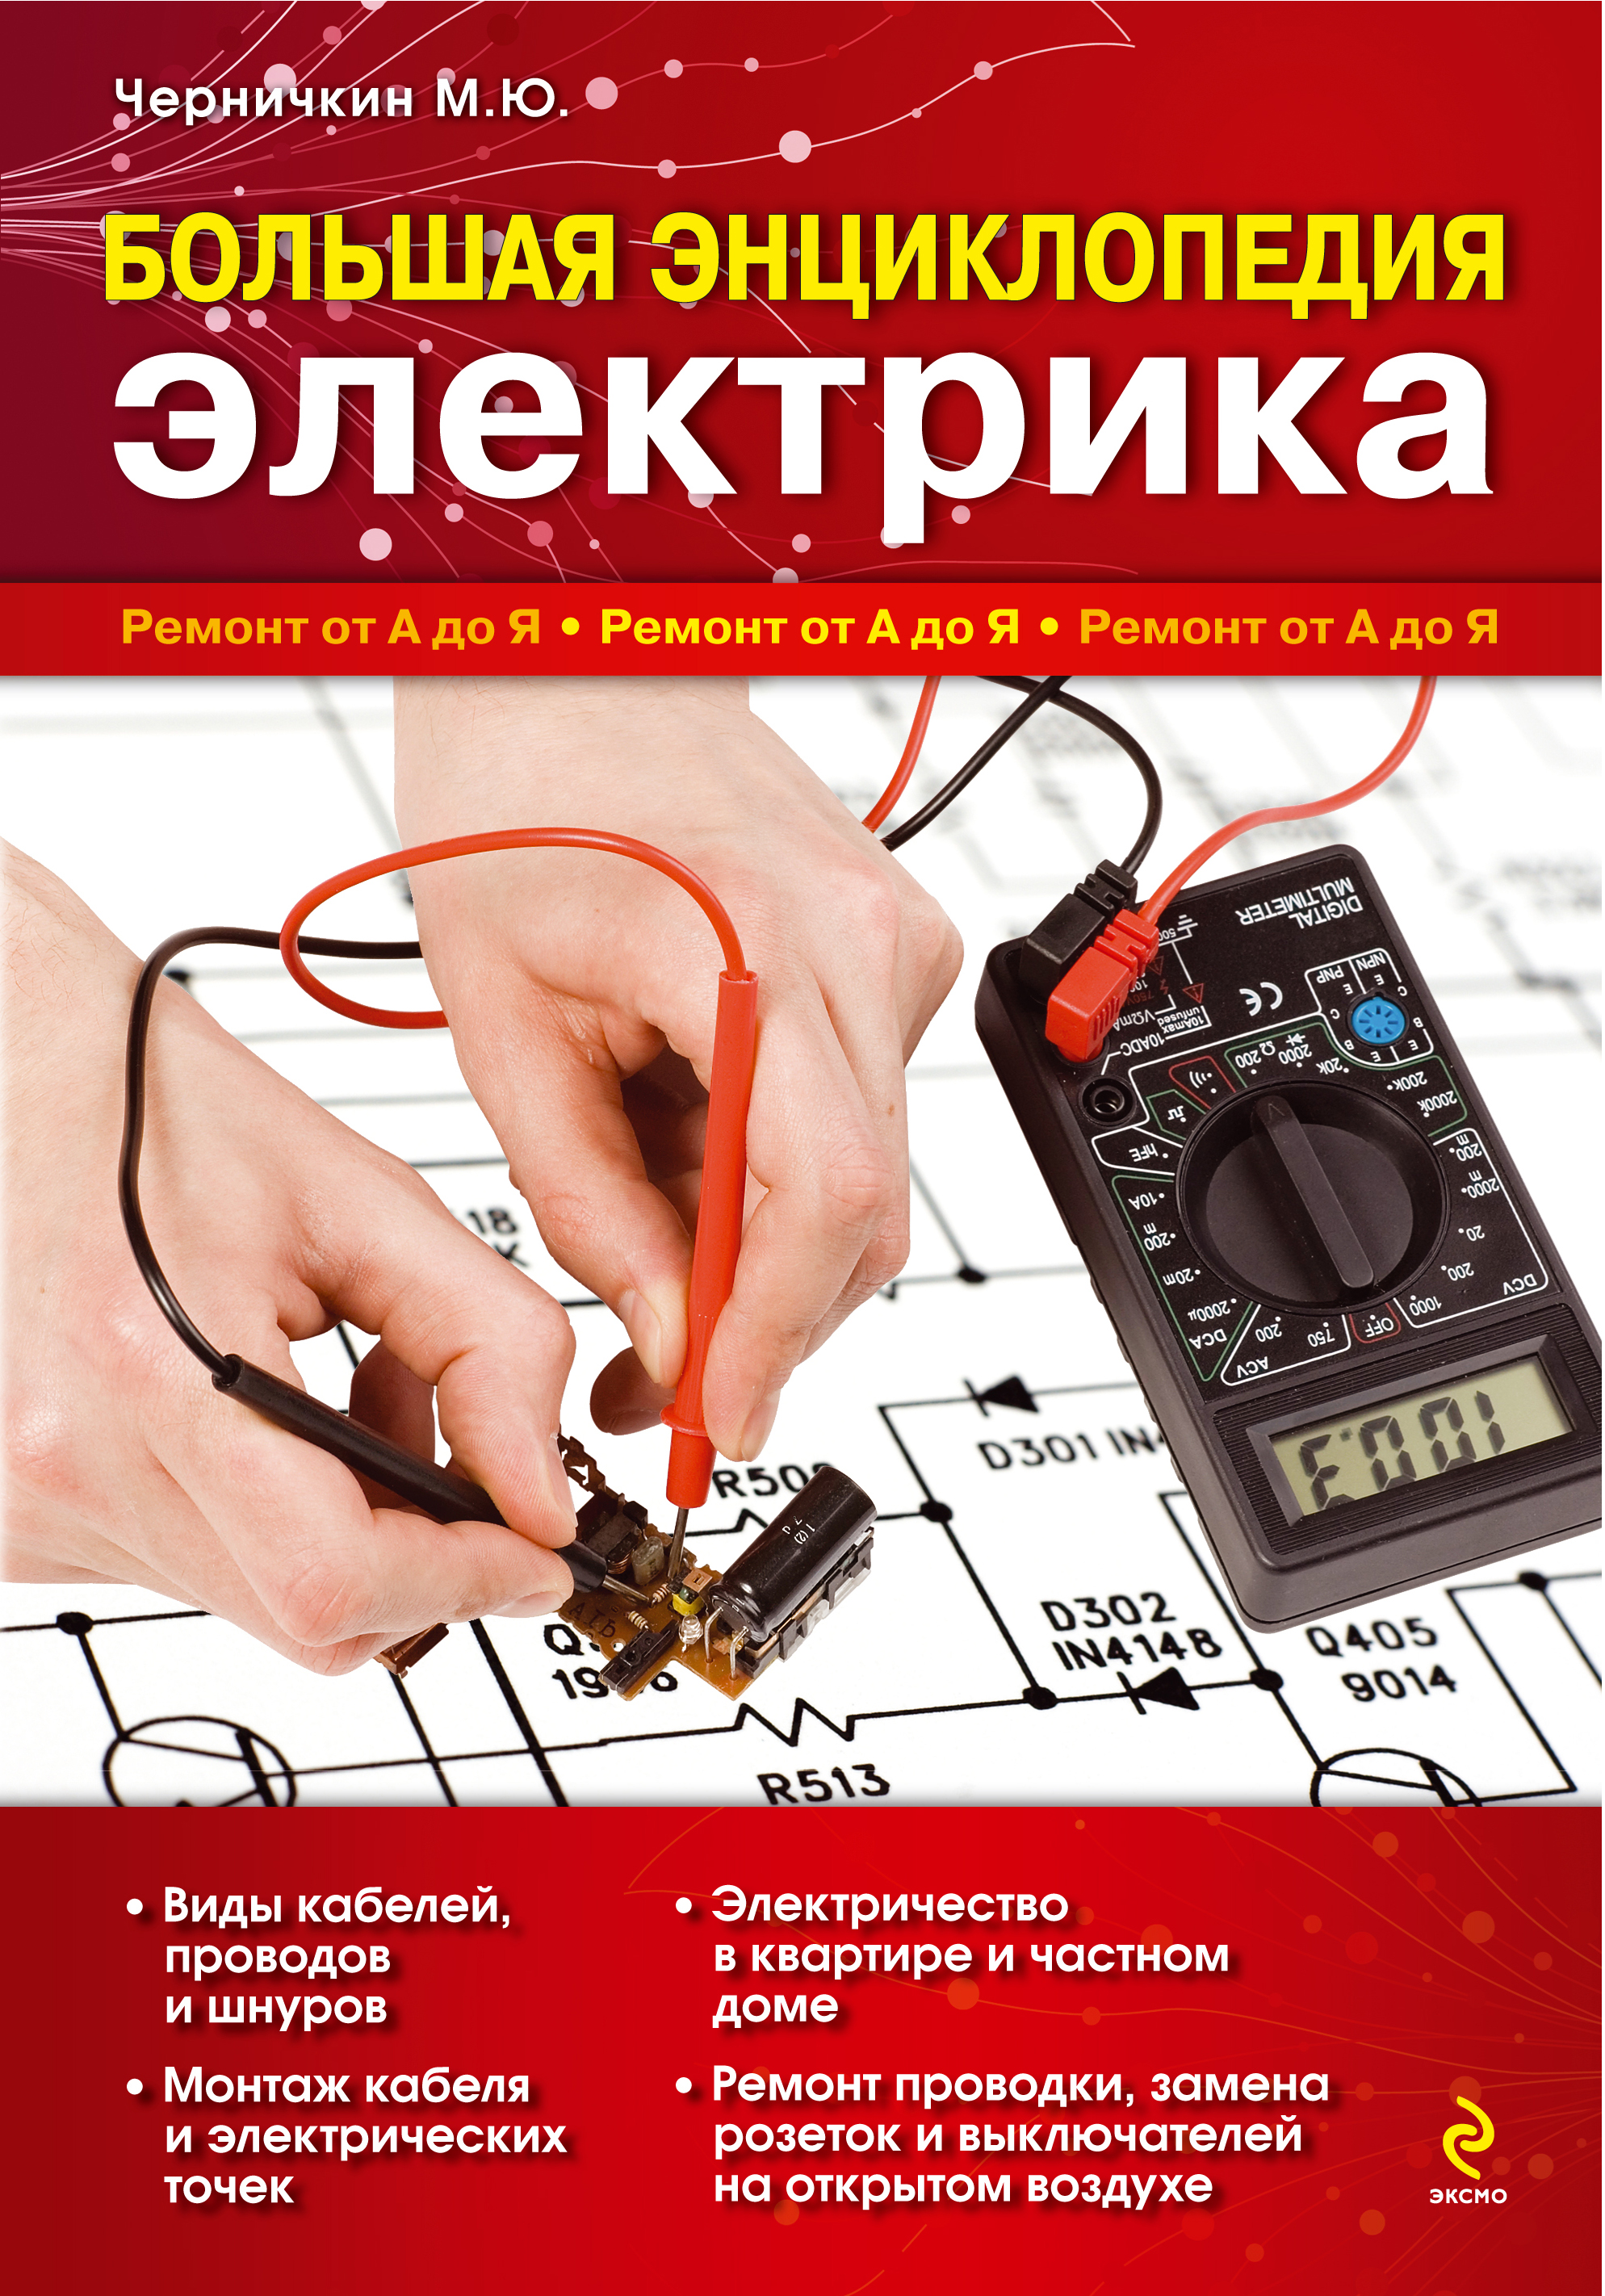 Большая энциклопедия электрика